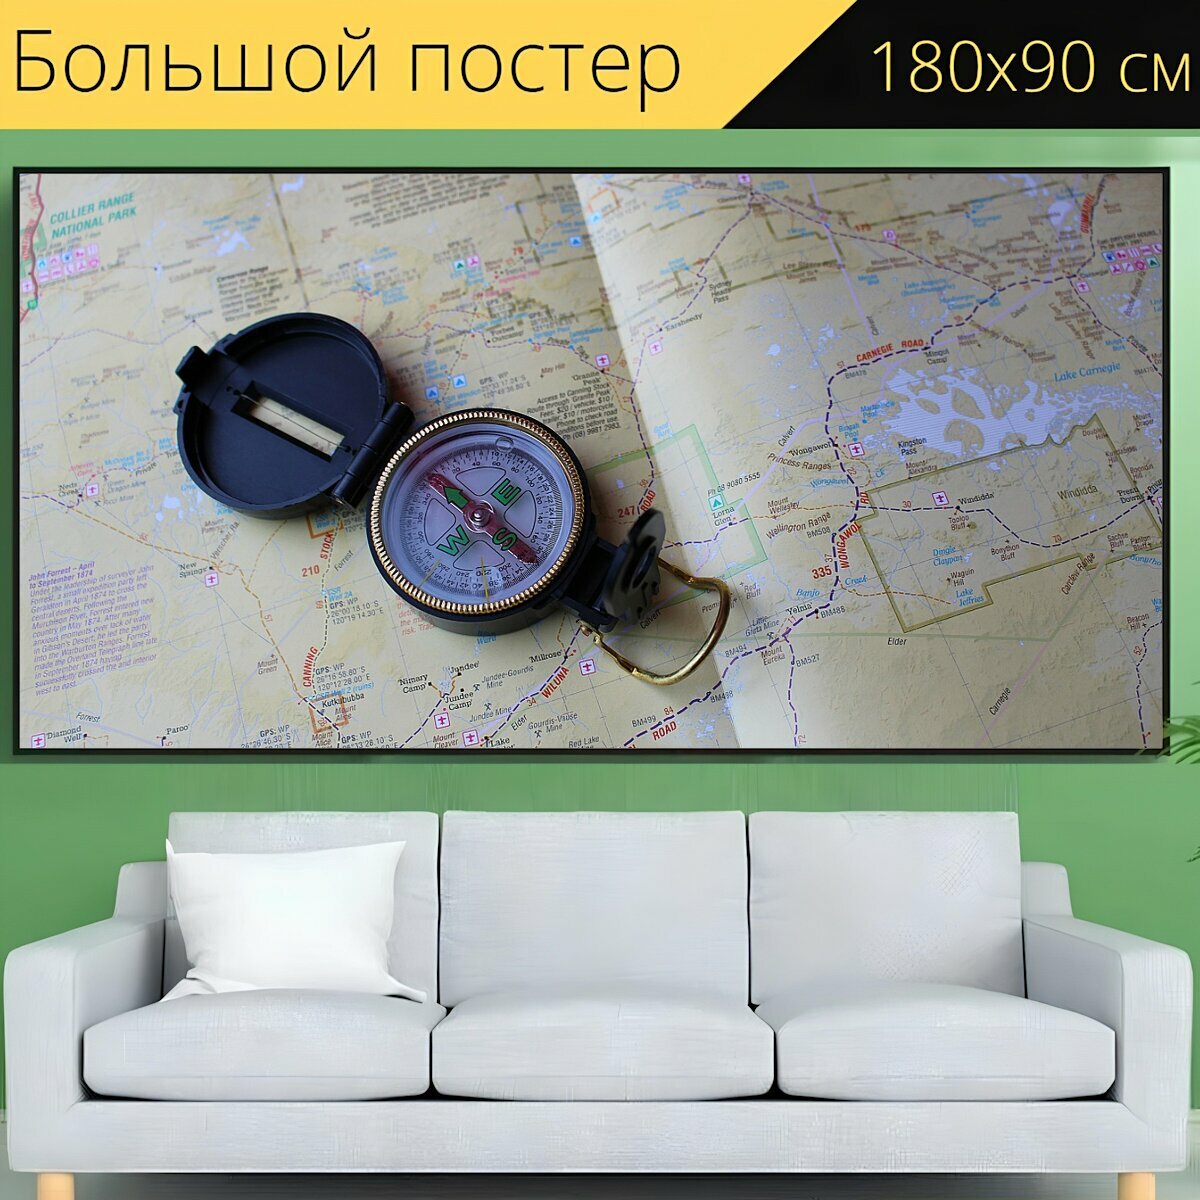 Большой постер "Компас, карта, навигация" 180 x 90 см. для интерьера